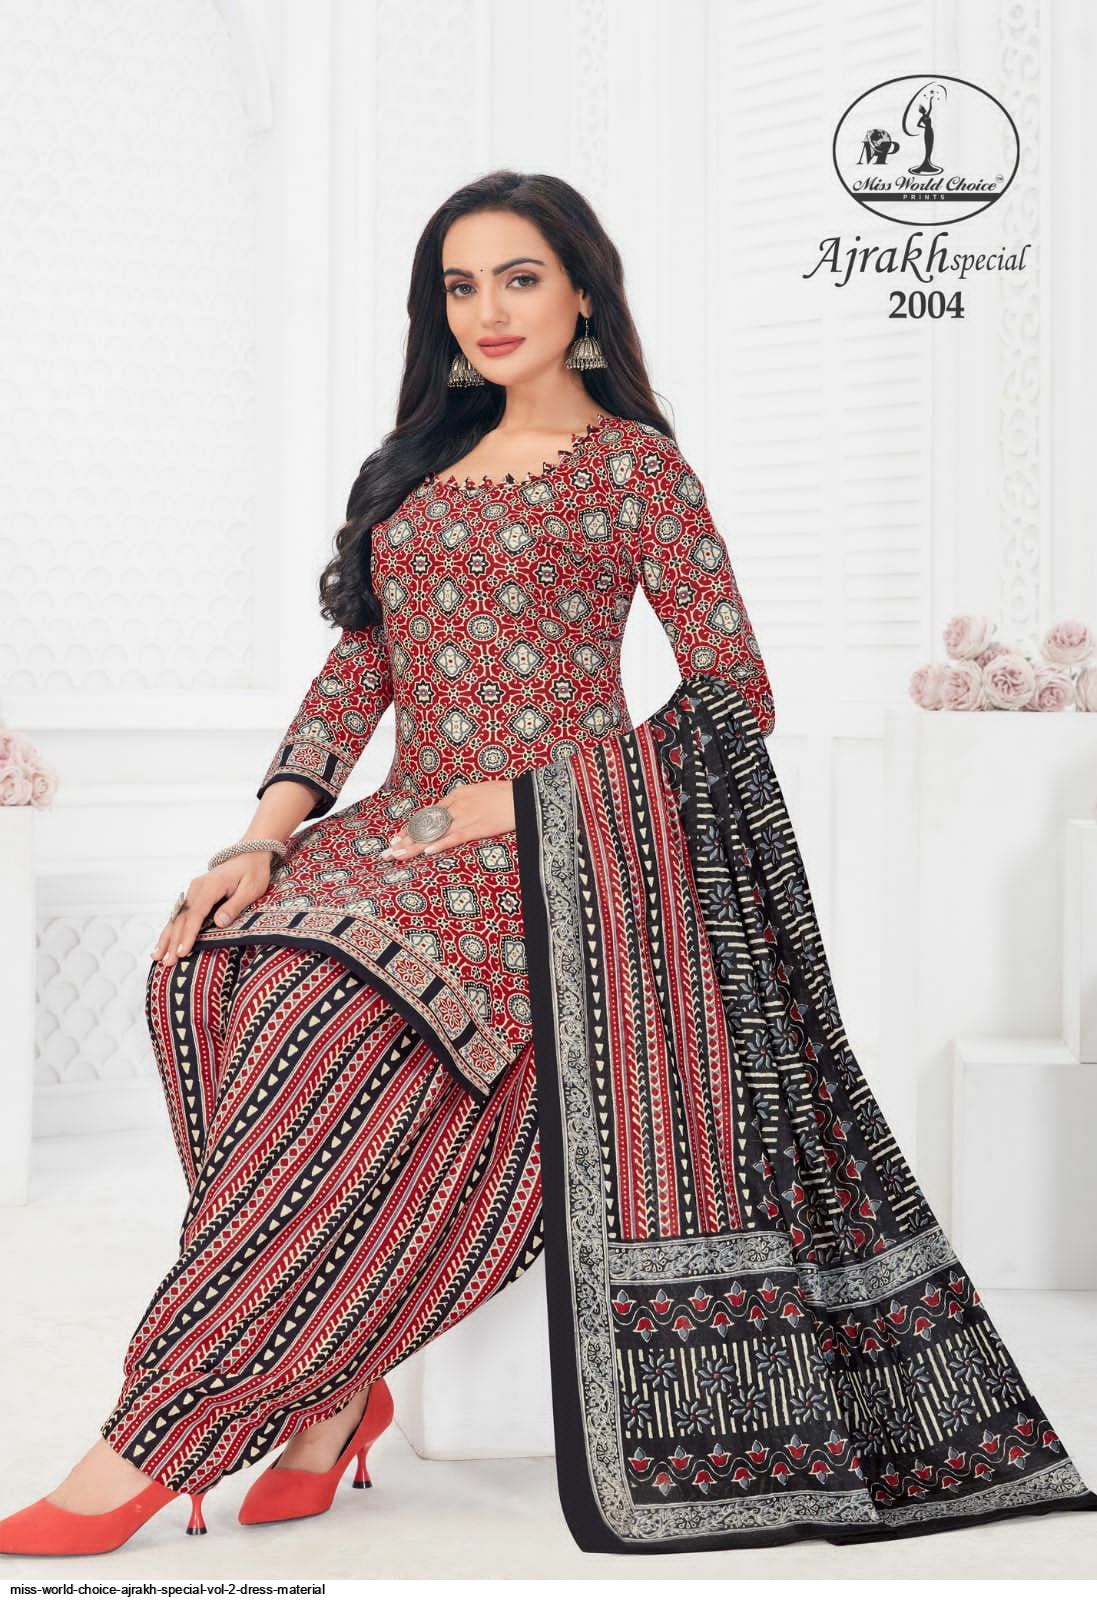 Jamatmal Tilokchand Ajrakh Special Vol-2 Cotton Dress Material Wholesale  Suits Online